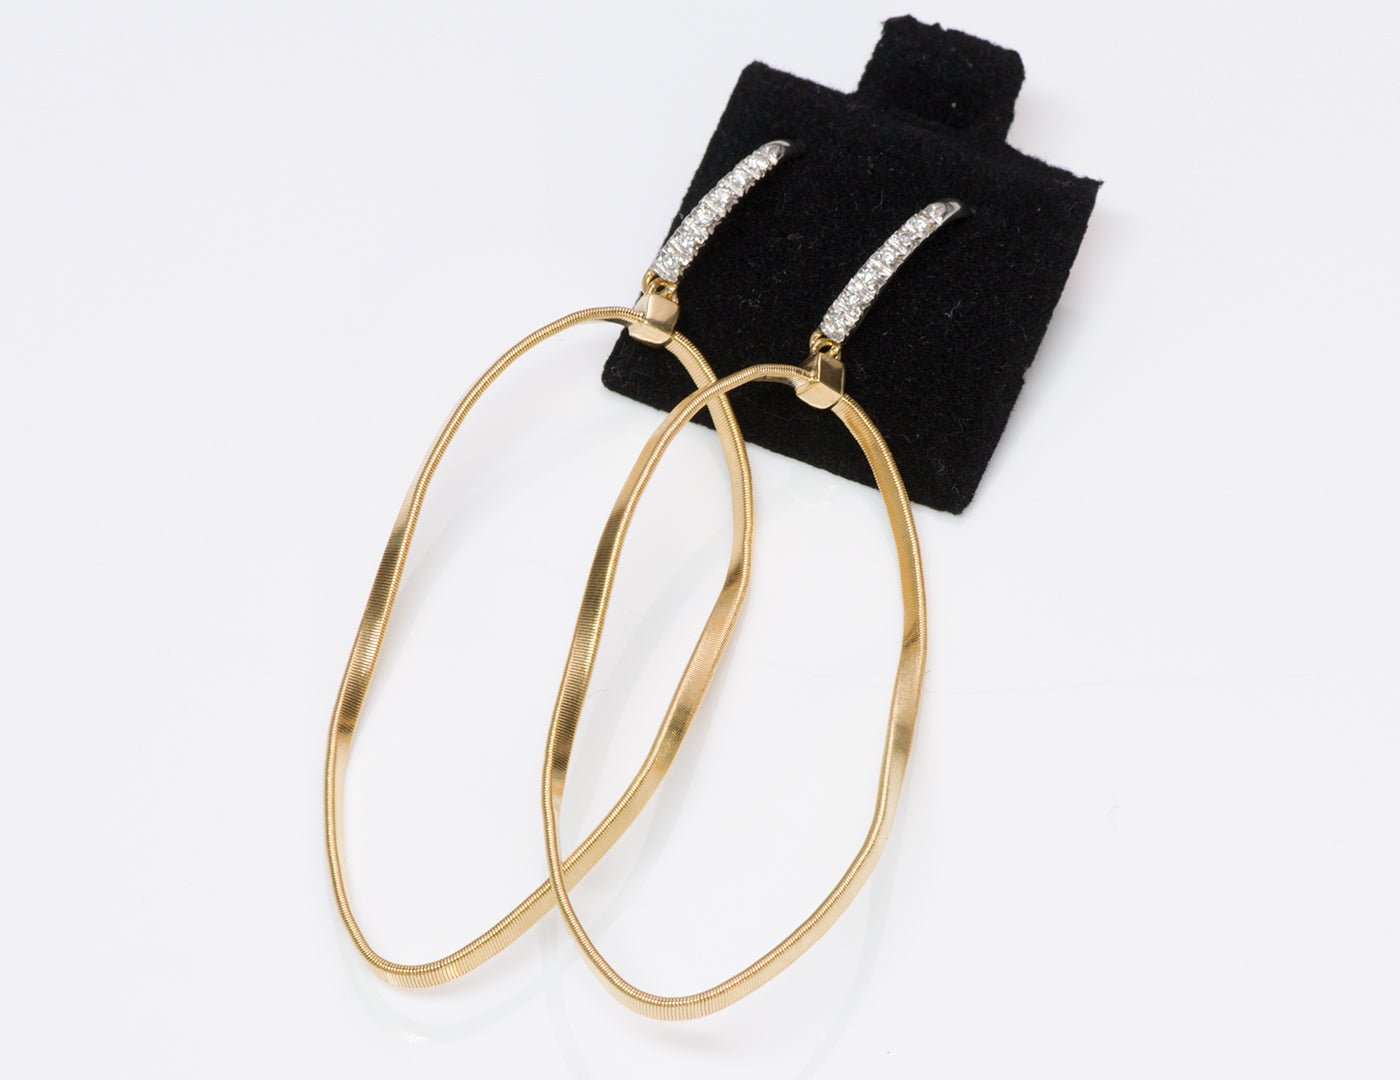 Marco Bicego 18K Yellow Gold Diamond Hoop Earrings